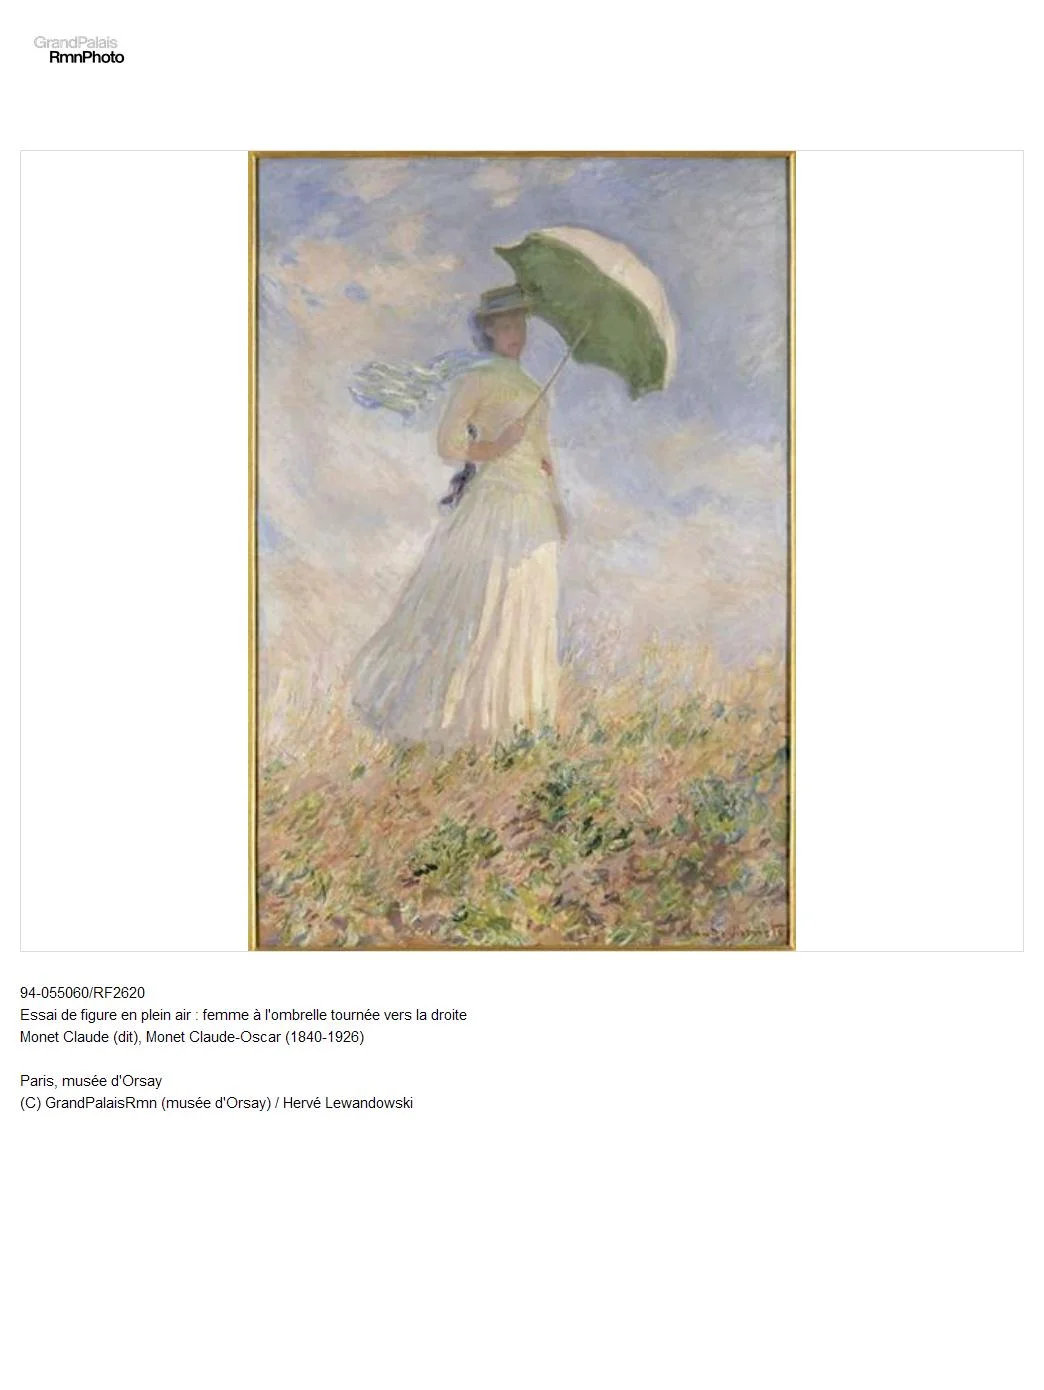 Essai de figure en plein air : femme à l'ombrelle tournée vers la droite Monet Claude (dit), Monet Claude-Oscar (1840-1926)